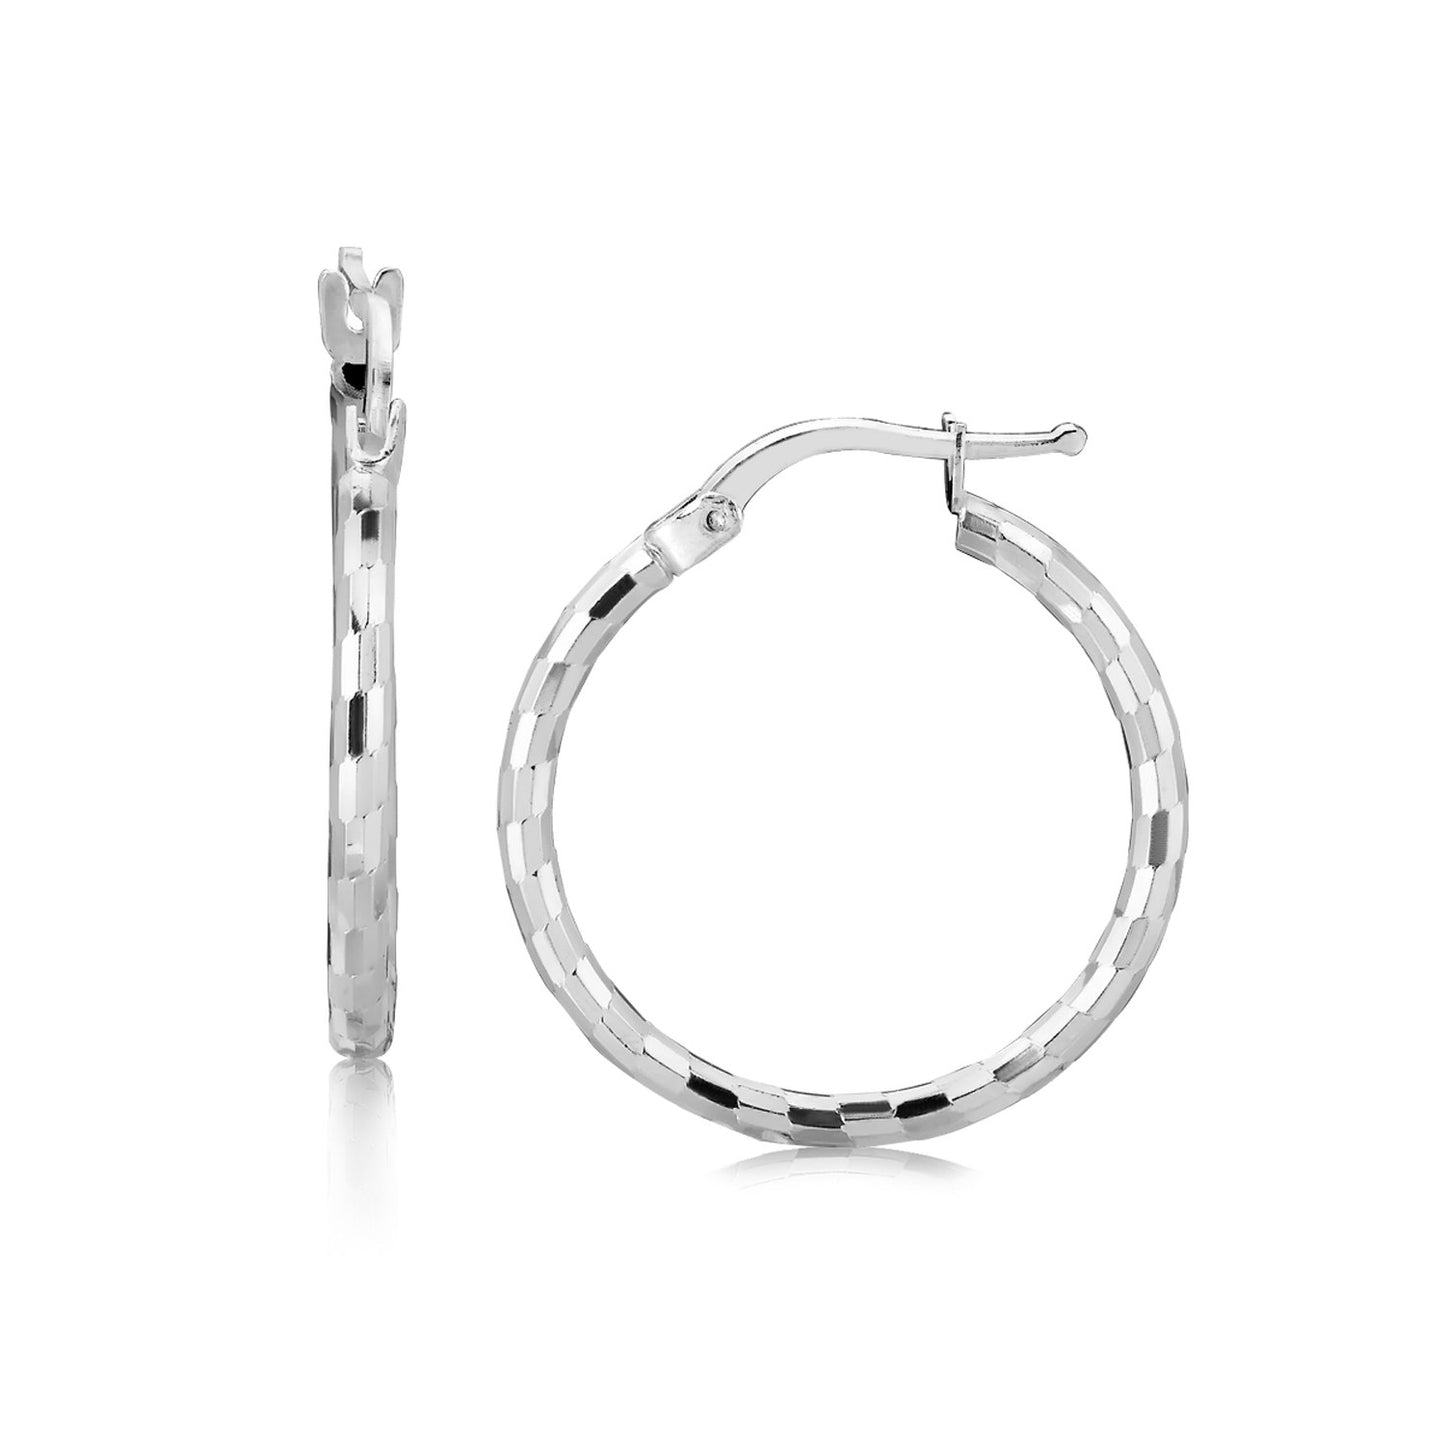 Sterling Silver Diamond Cut Hoop Earrings with Rhodium Plating (2x20mm)